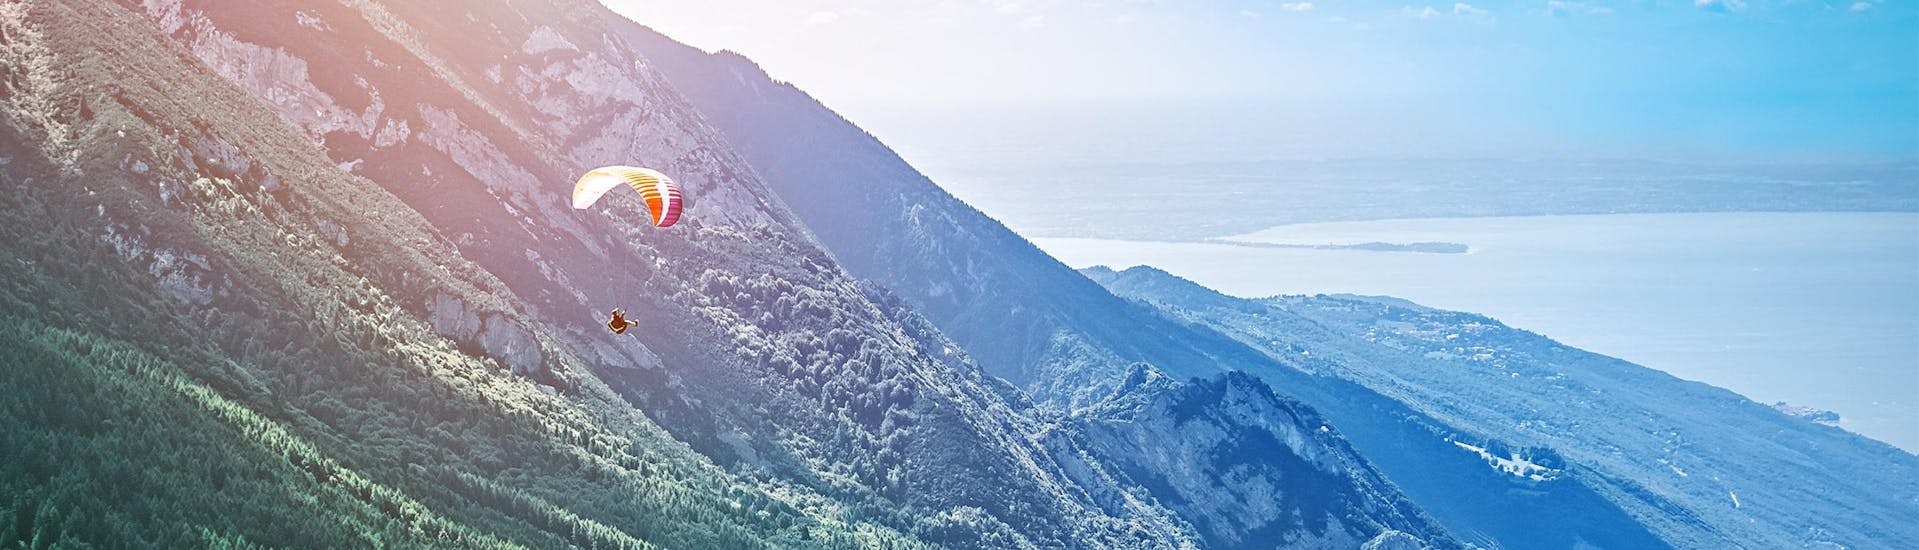 Una foto di un parapendio che vola dal Monte Baldo verso il Lago di Garda.